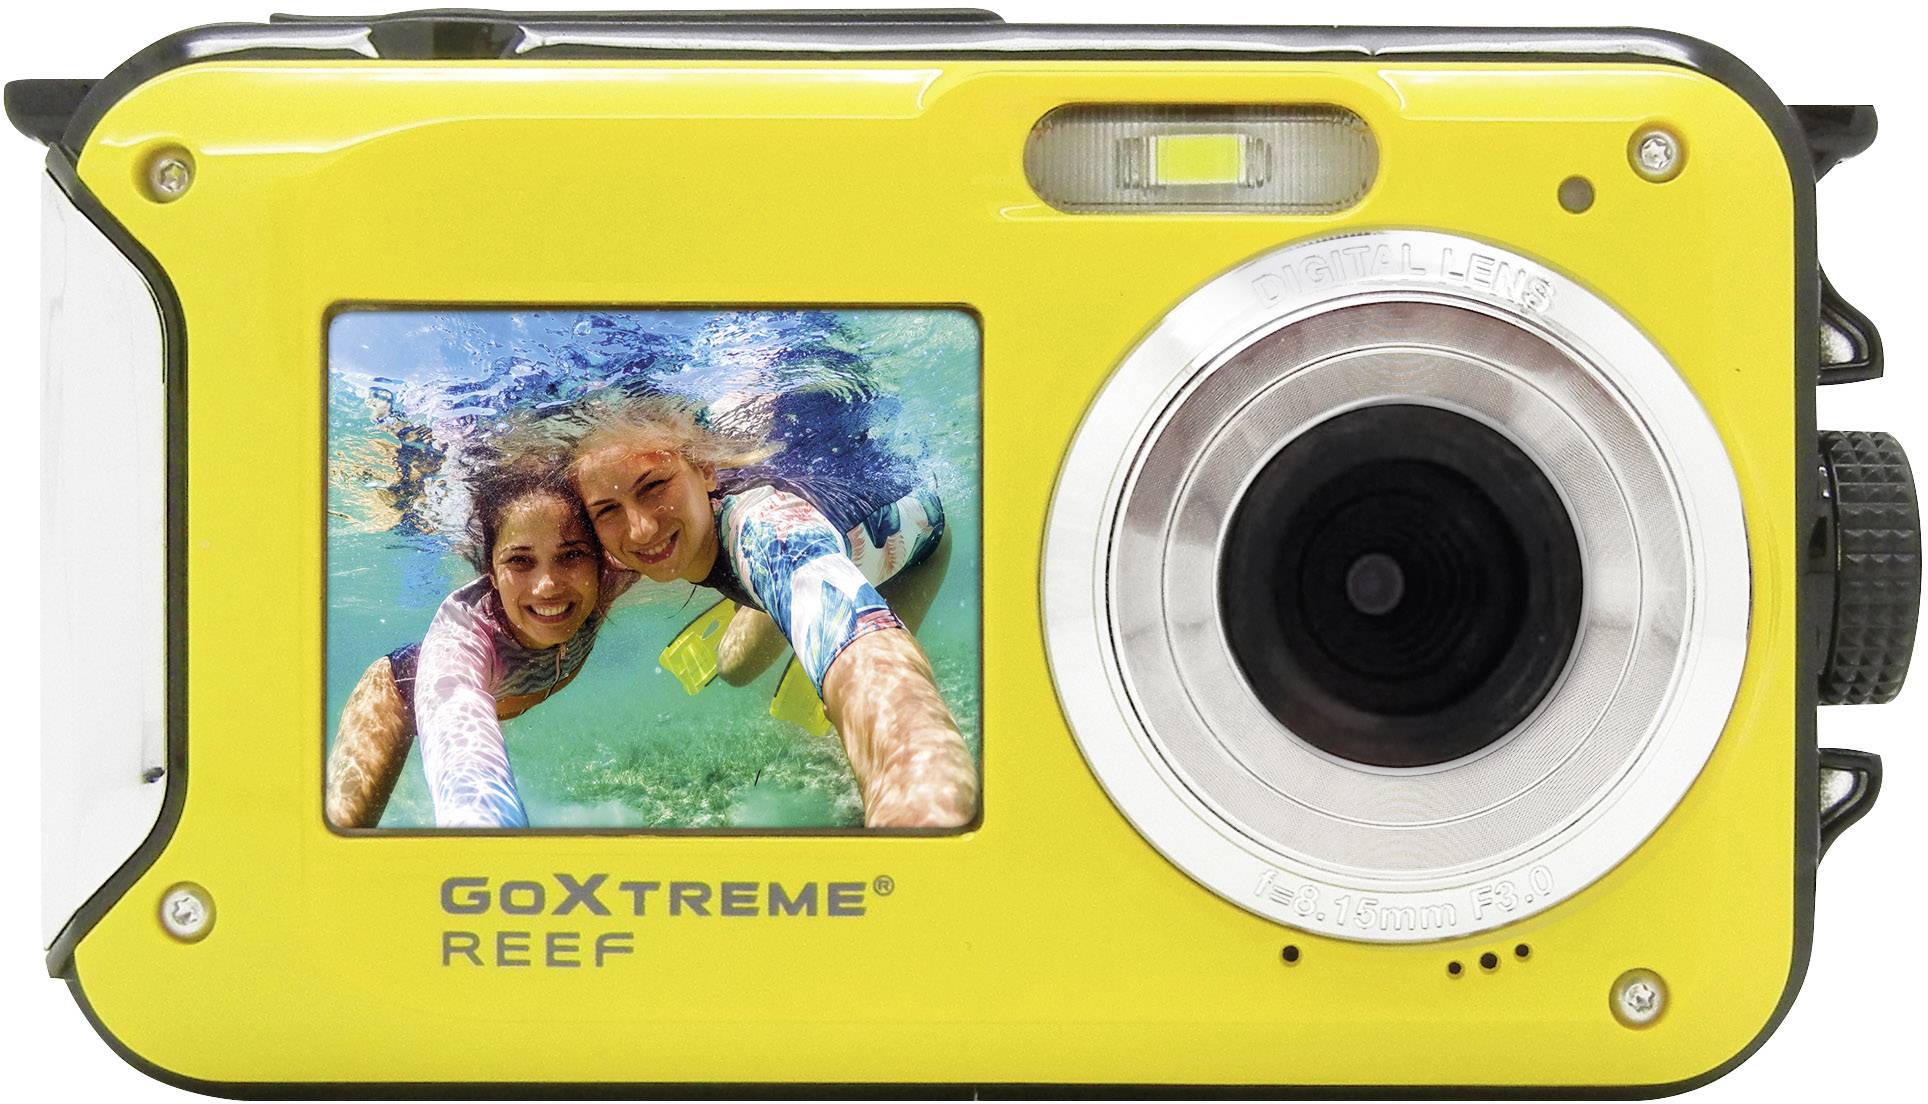 GoXtreme Reef Yellow digitální fotoaparát 24 Megapixel žlutá Full HD videozáznam, vodotěsný do 3 m, voděodolný, odolný proti nárazu, s vestavěným bleskem